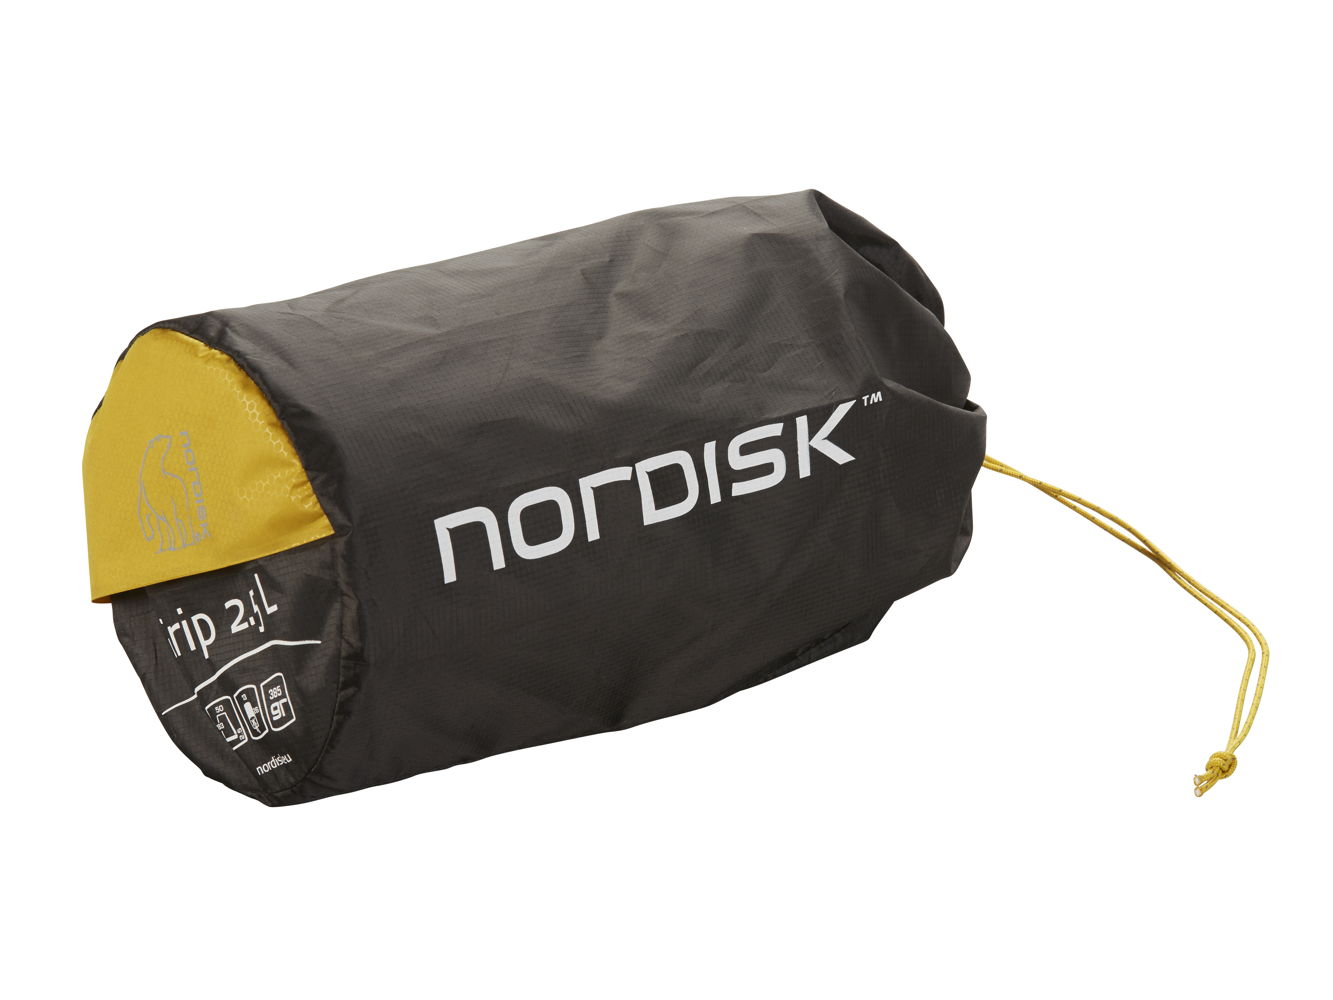 Nordisk - Grip 2.5 slaapmatje (verpakt)